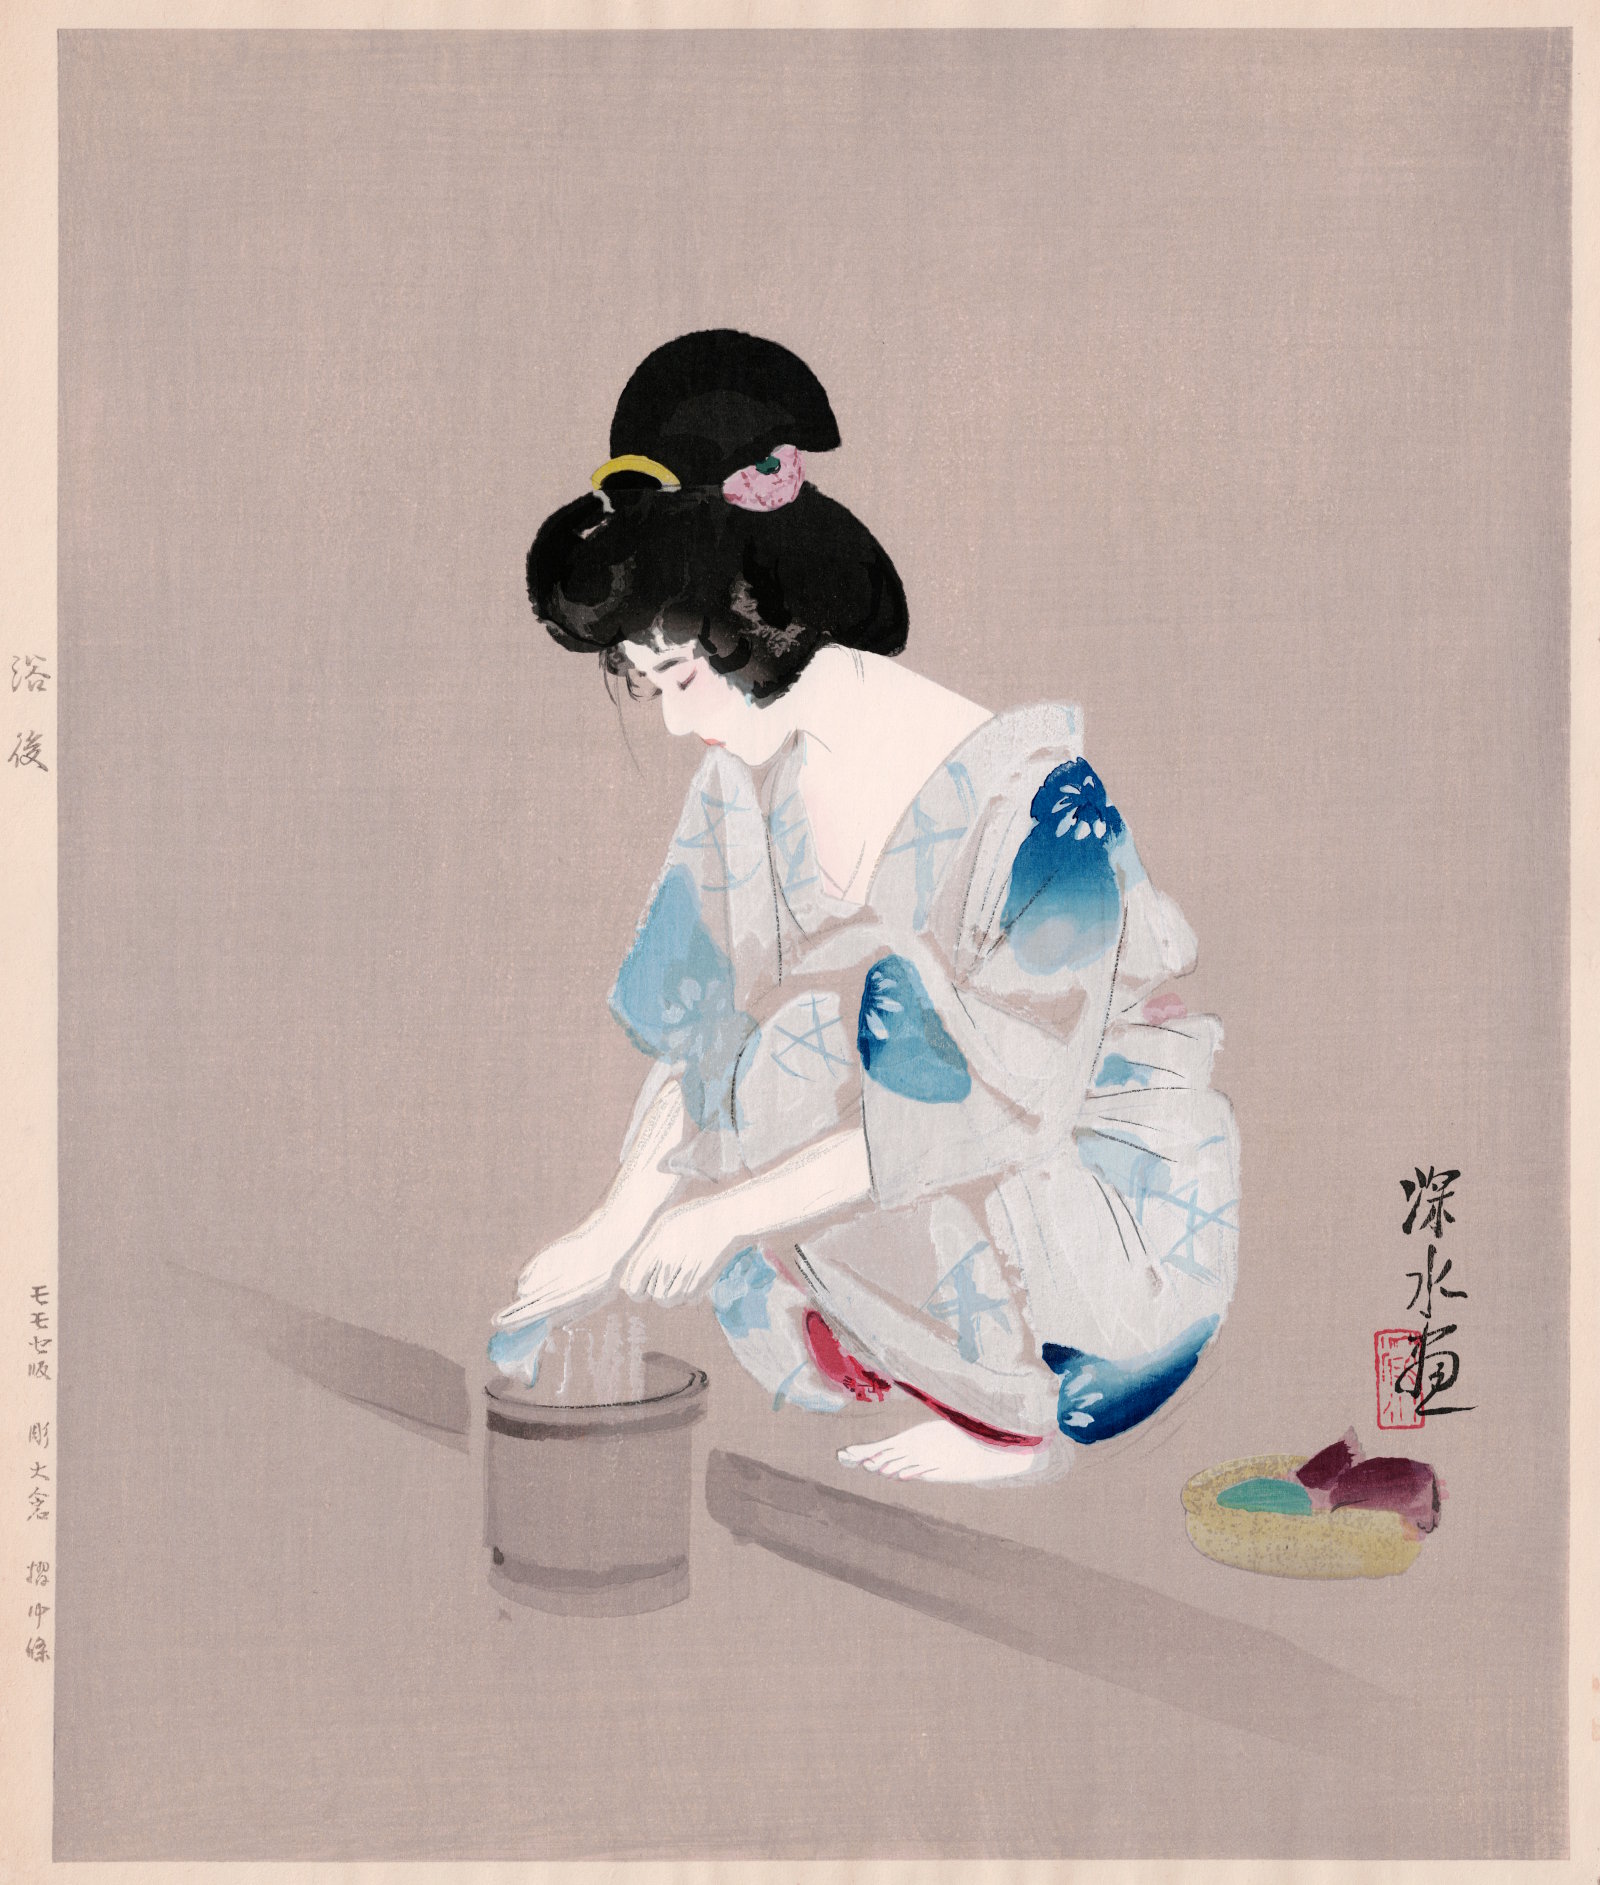 Shinsui Ito “After Bathing” 1977 woodblock print